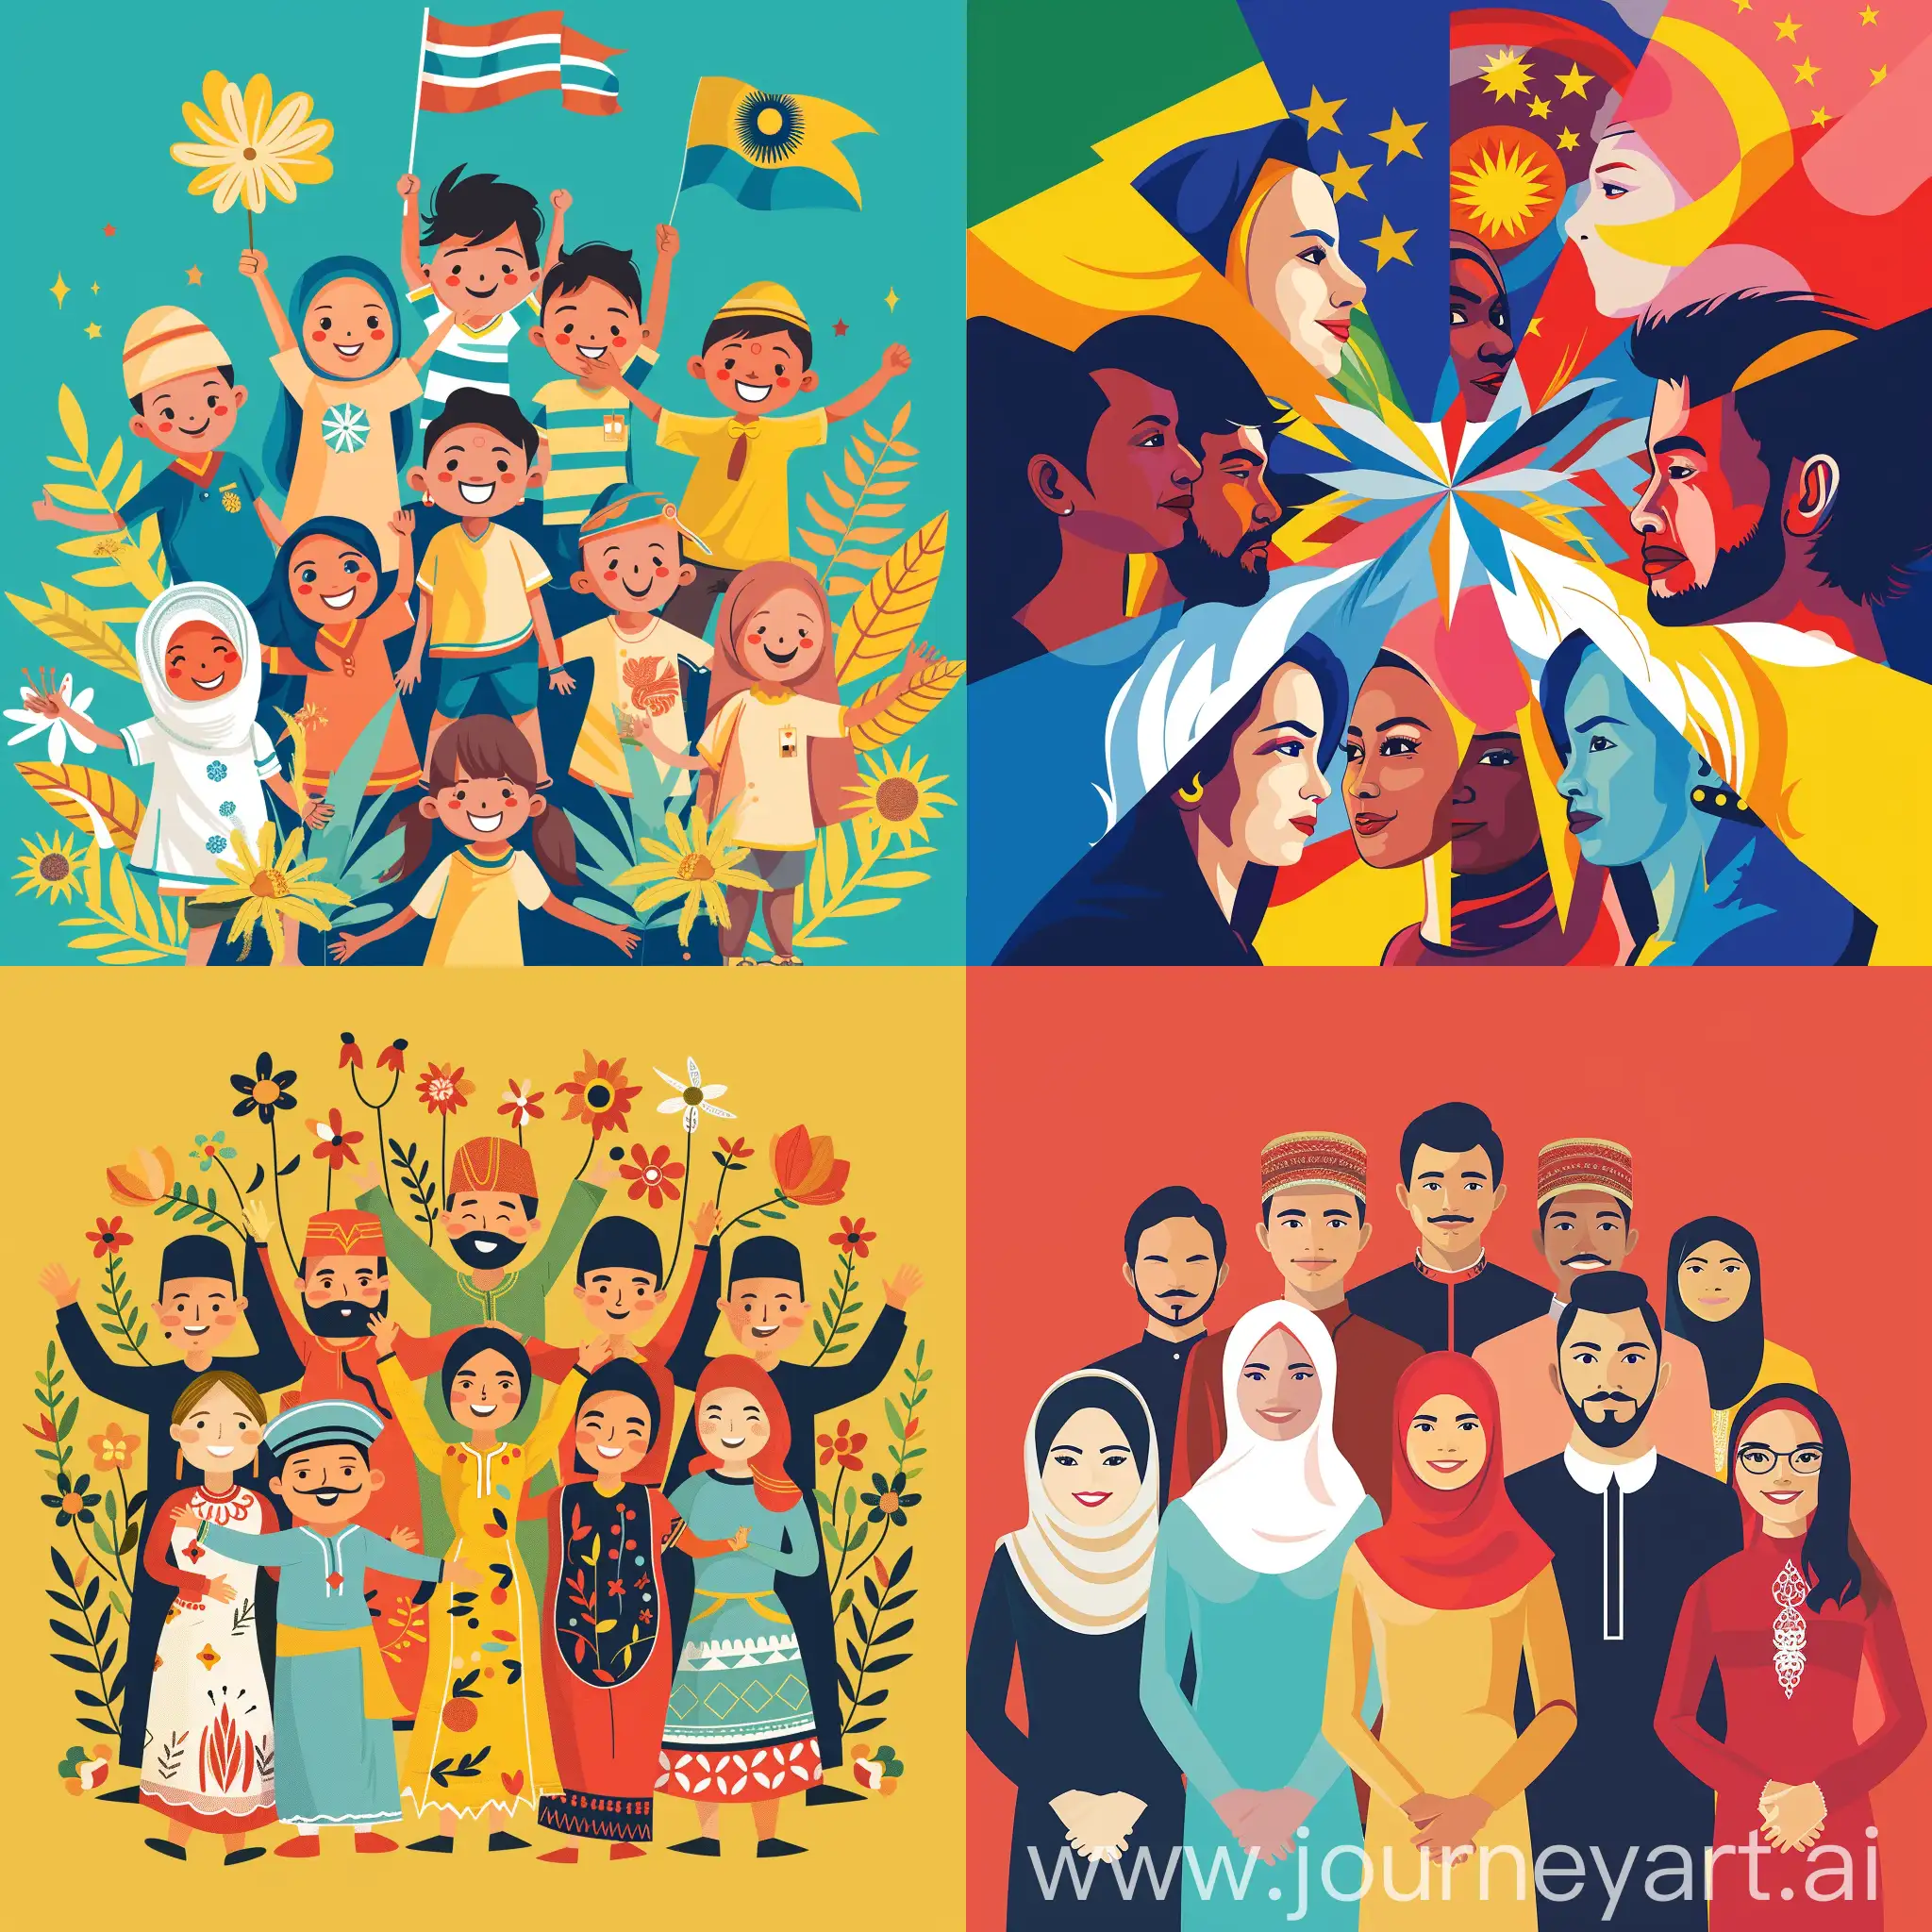 canva like, unity theme in malaysia, racial harmony